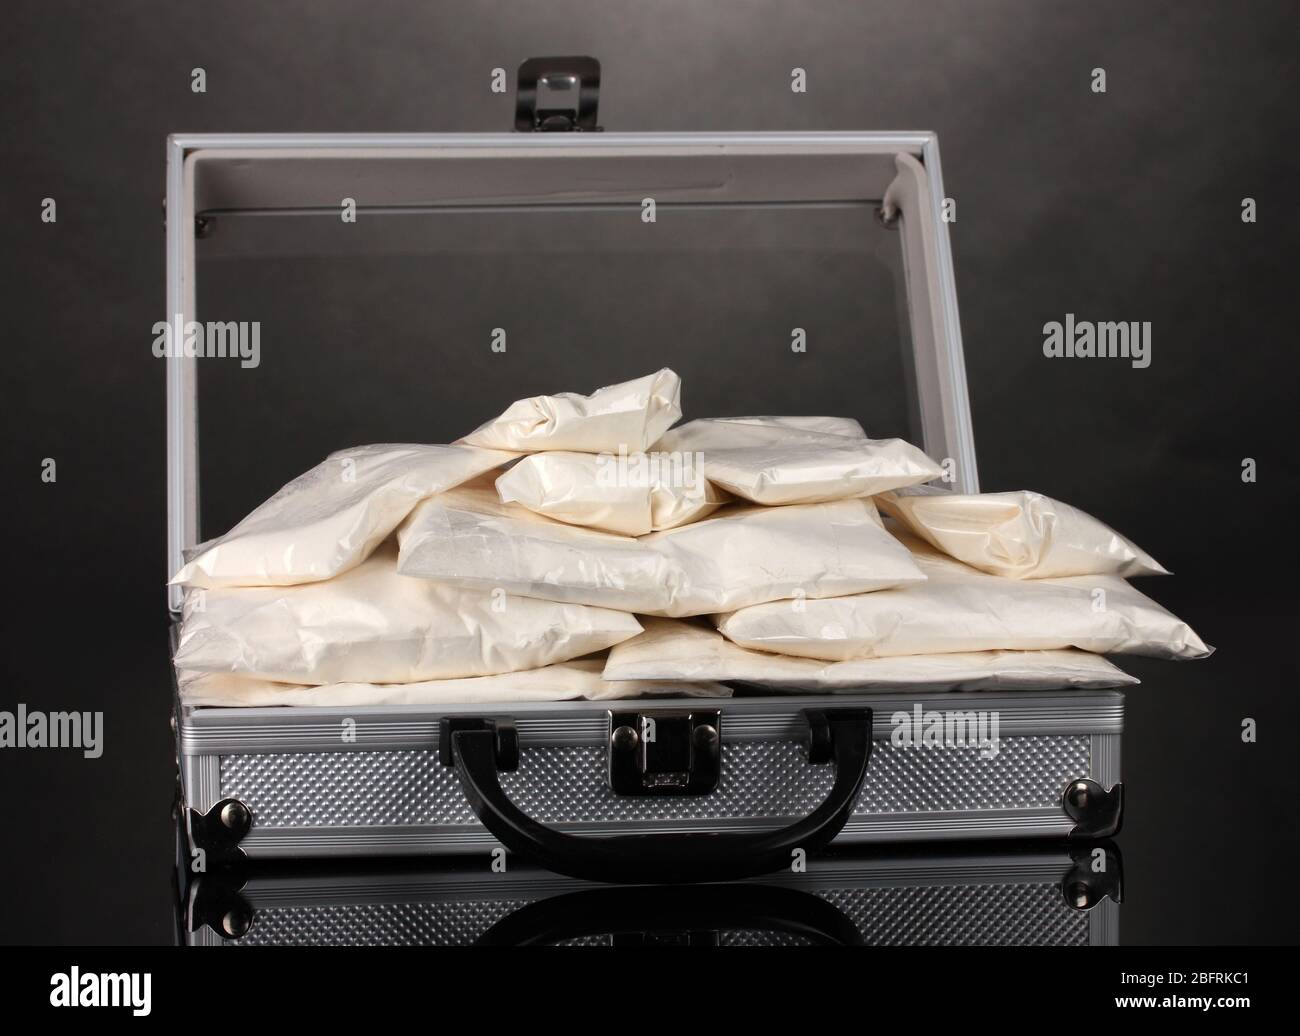 Cocaïne dans une valise sur fond gris Banque D'Images